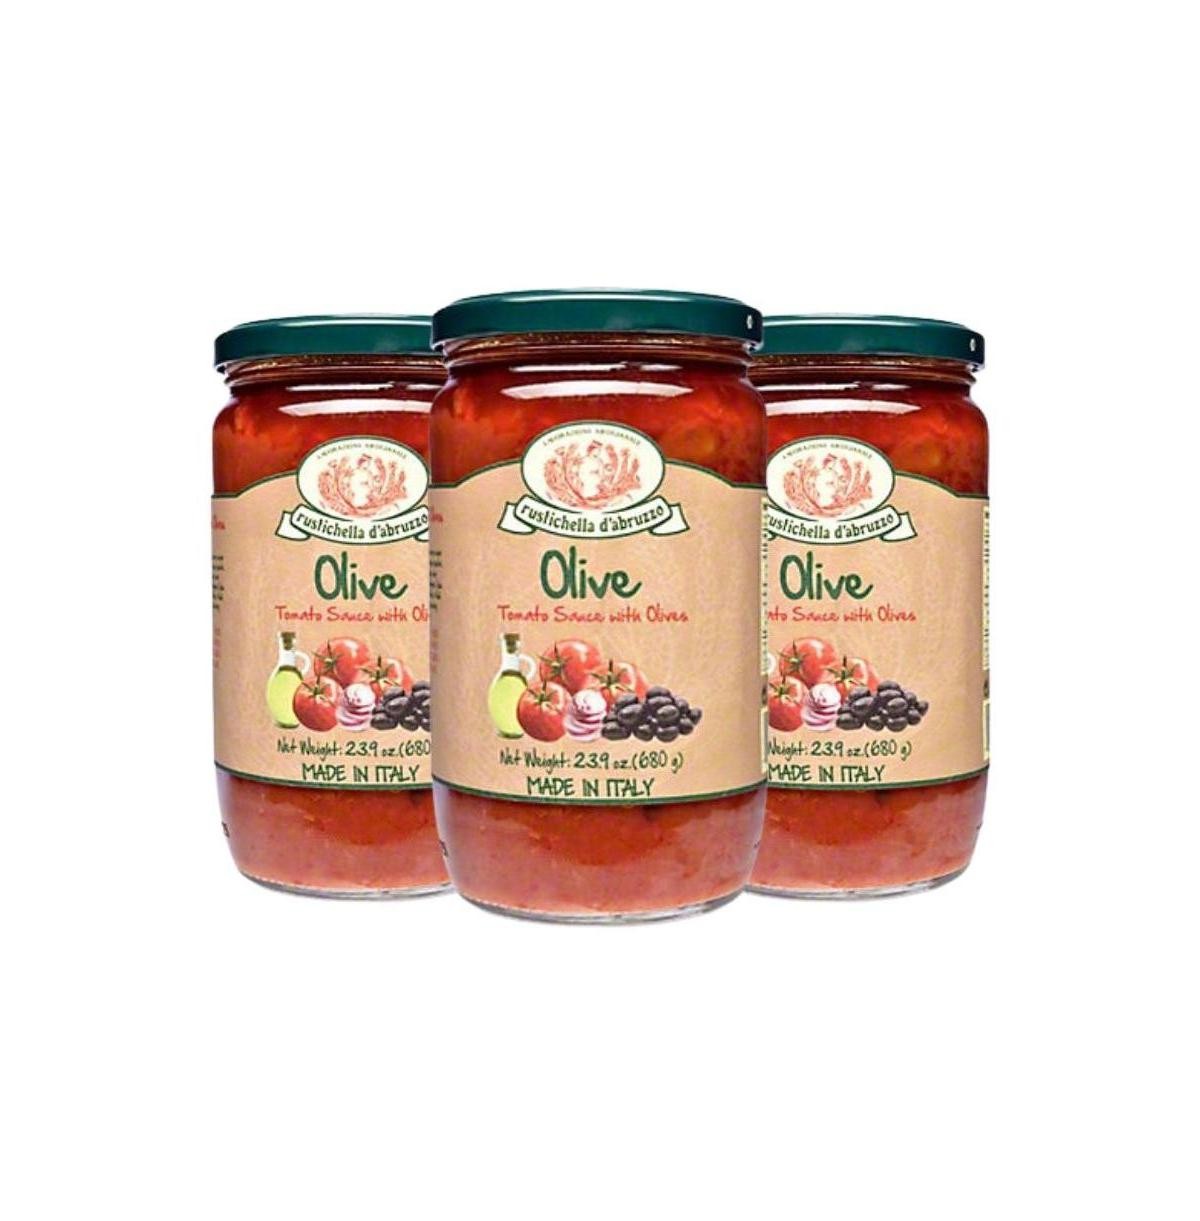 Rustichella D'Abruzzo Olive Sauce